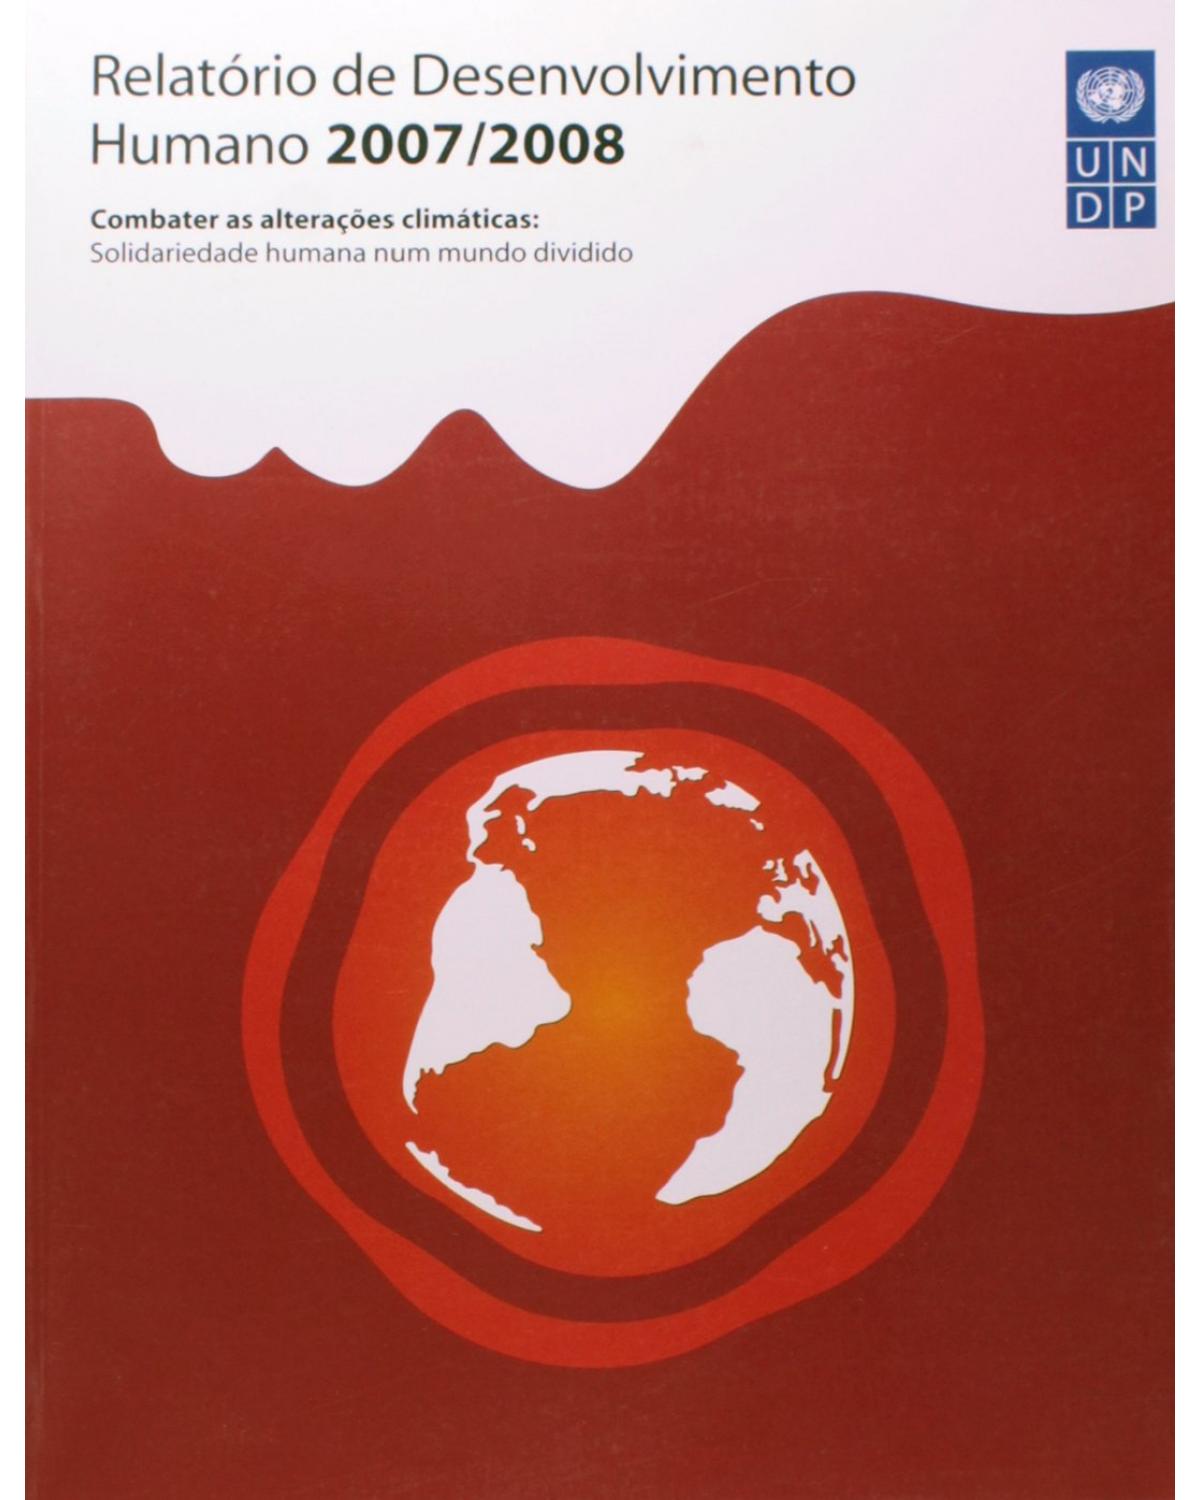 Relatório de desenvolvimento humano 2007/2008 - combater as alterações climáticas: solidariedade humana num mundo dividido - 1ª Edição | 2007